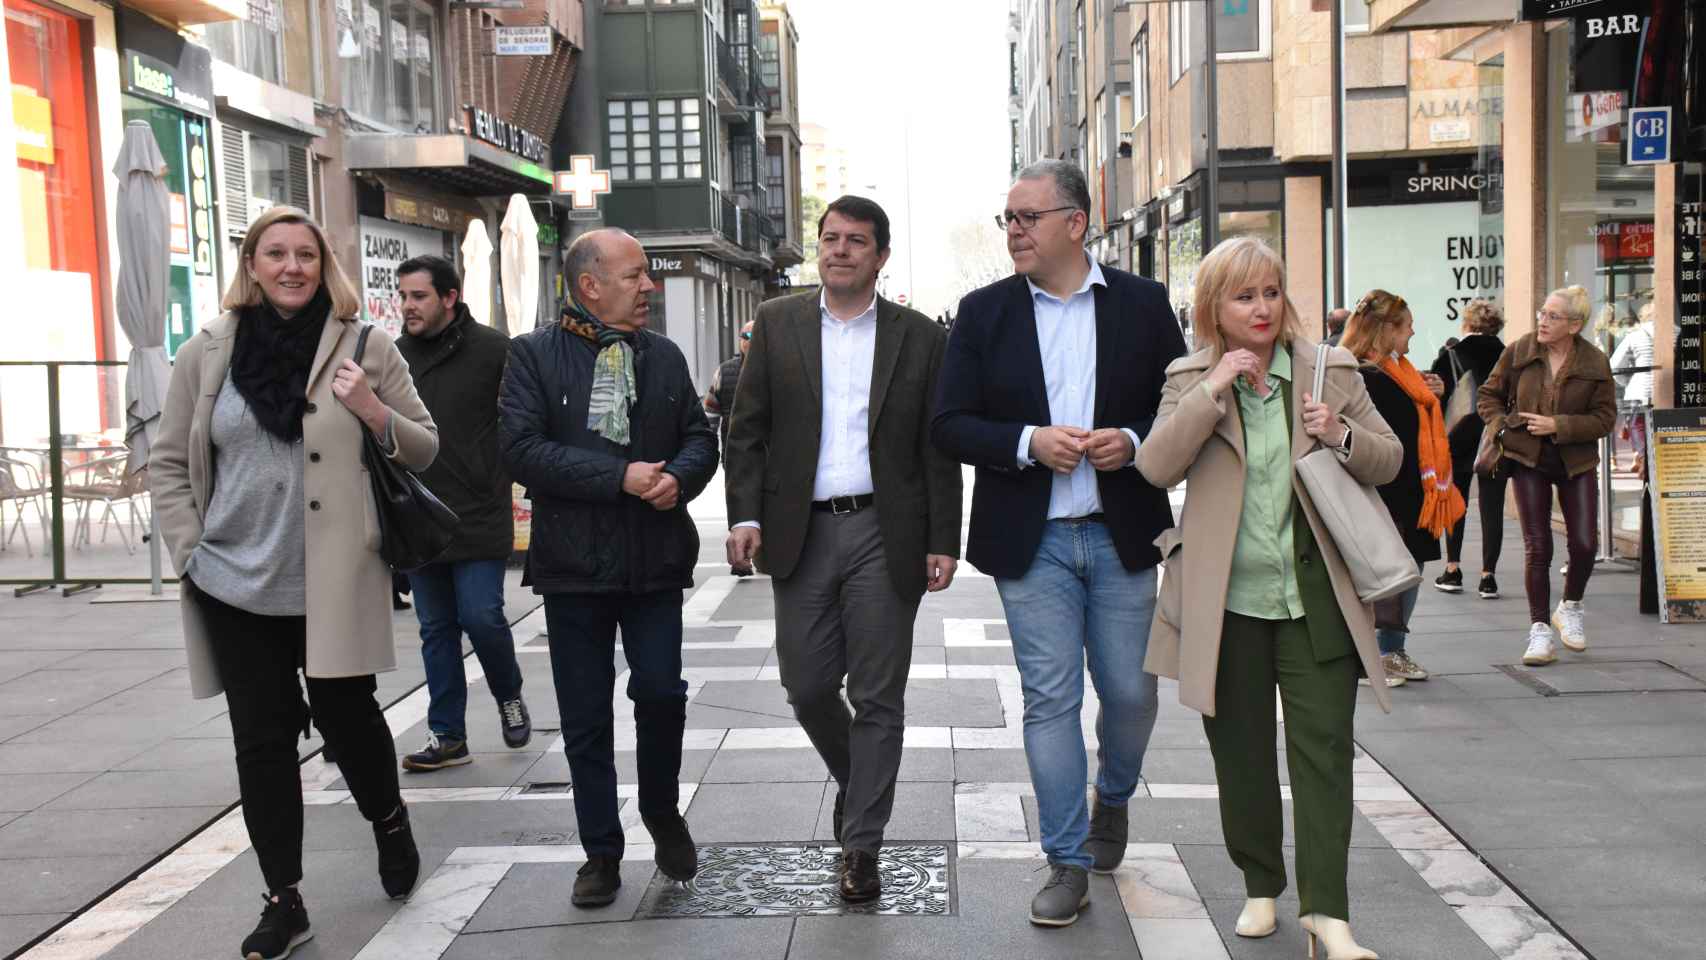 Isabel Blanco, José María Barrios, Alfonso Fernández Mañueco, Jesús María Prada y Leticia García